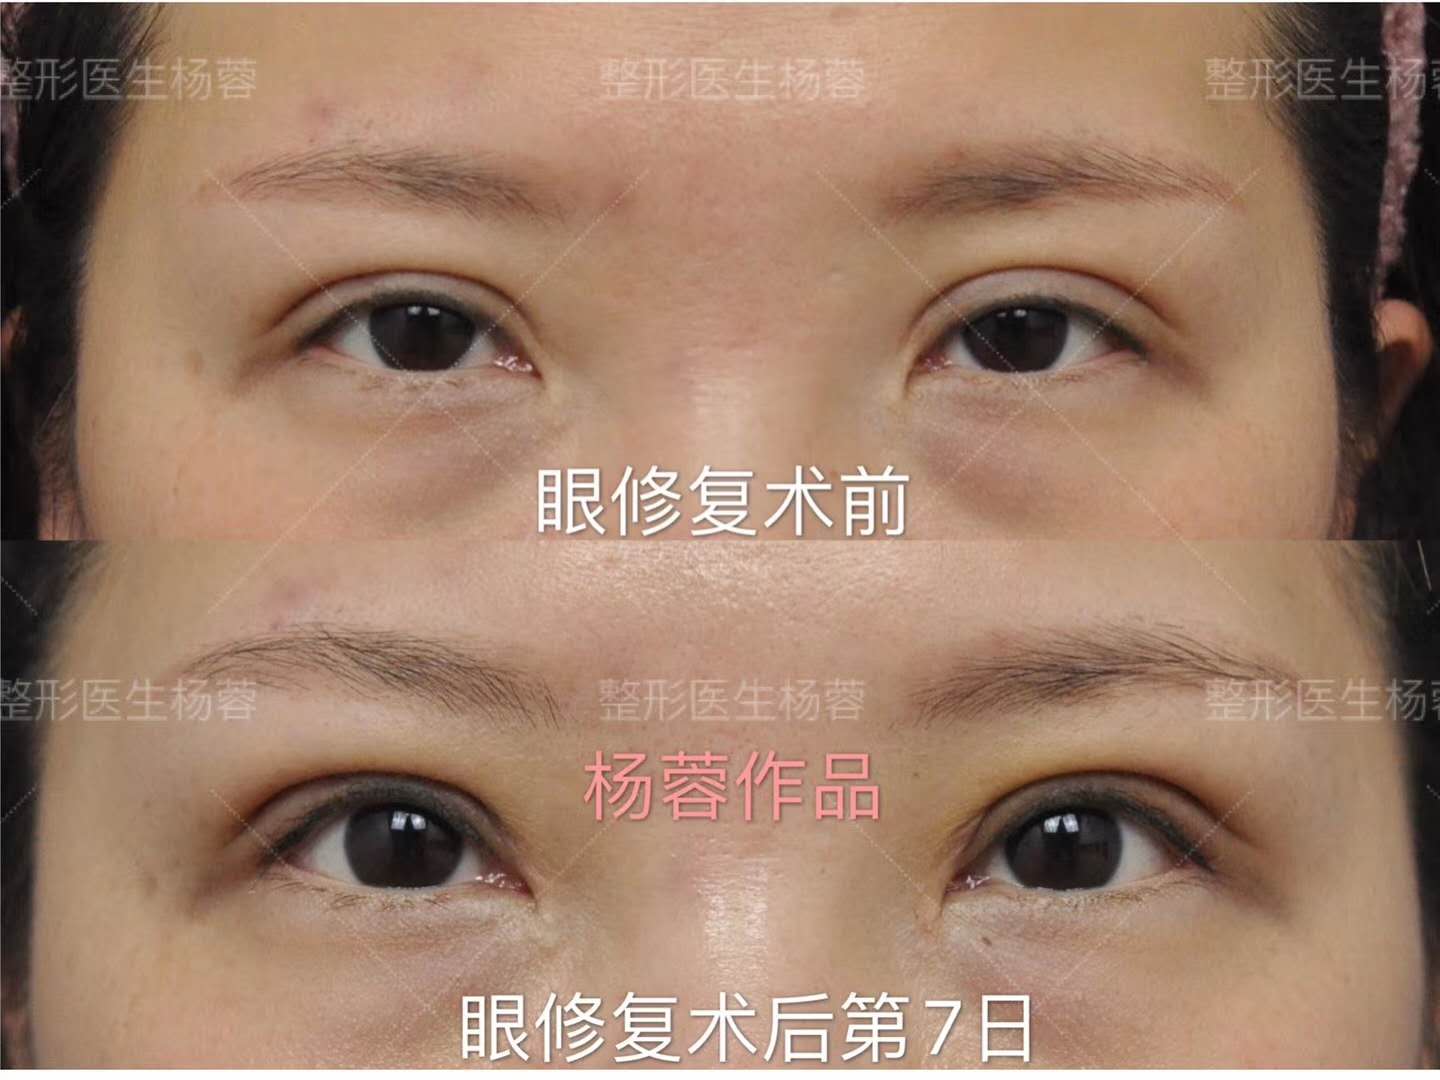 内眼角修复案例：开内眼角后出现了豁口、圆钝、疤痕怎么办？通过解剖复位还原初眼状态 - 知乎